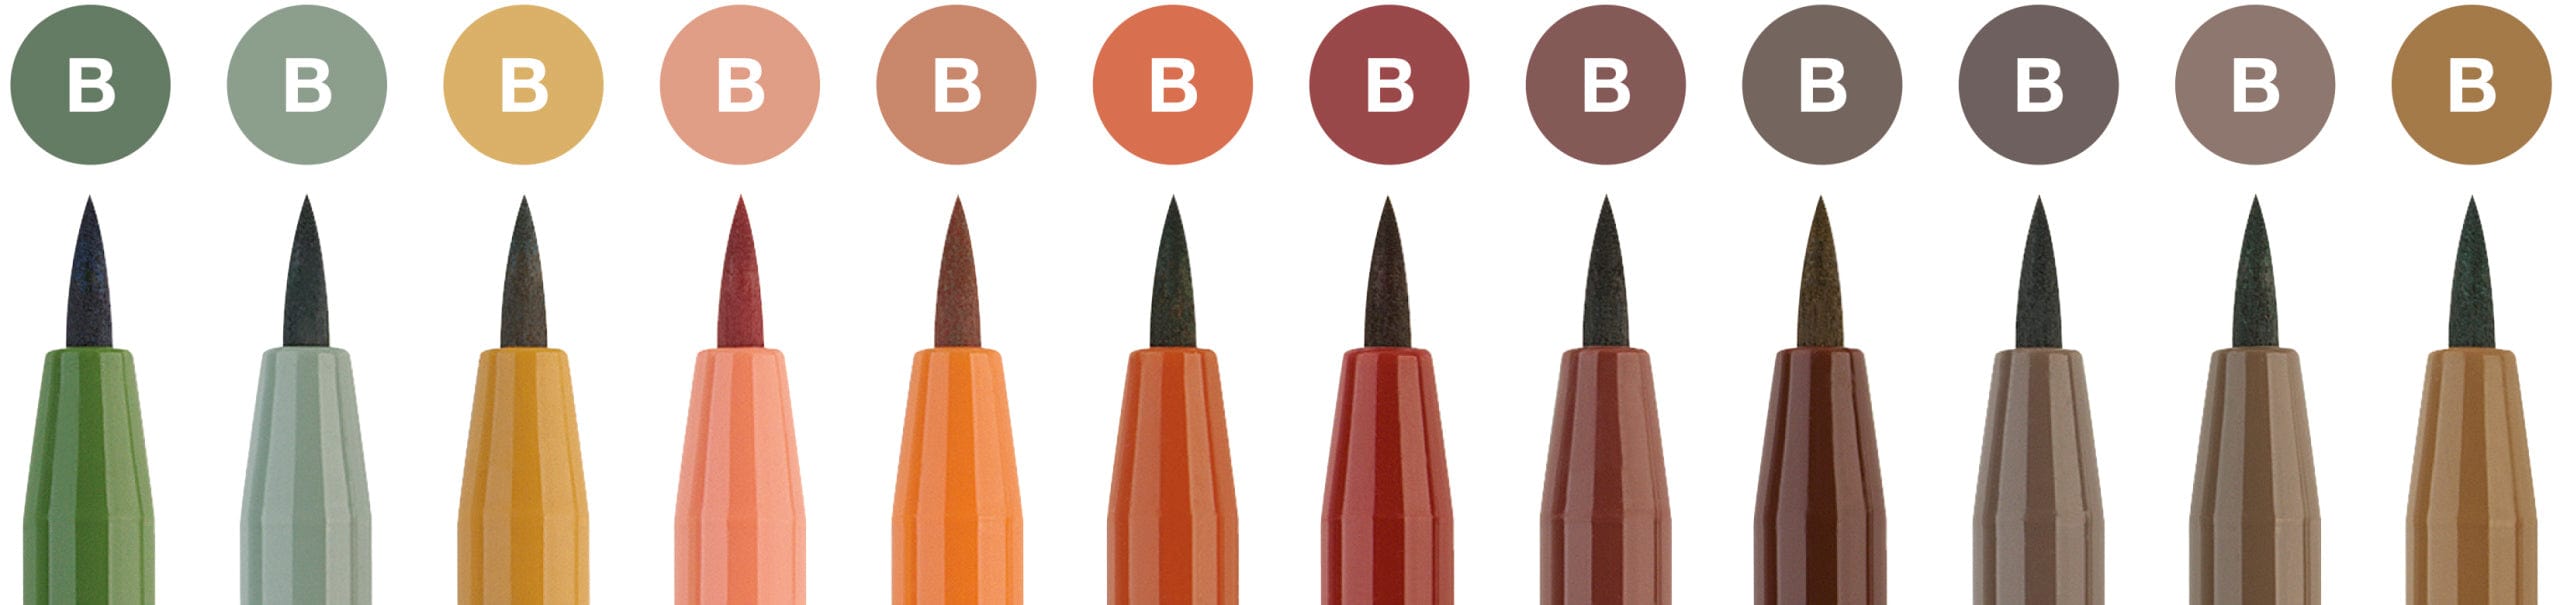 Faber-Castell Tuscher Pitt artist pen gavesæt jordfarver - 12 farver